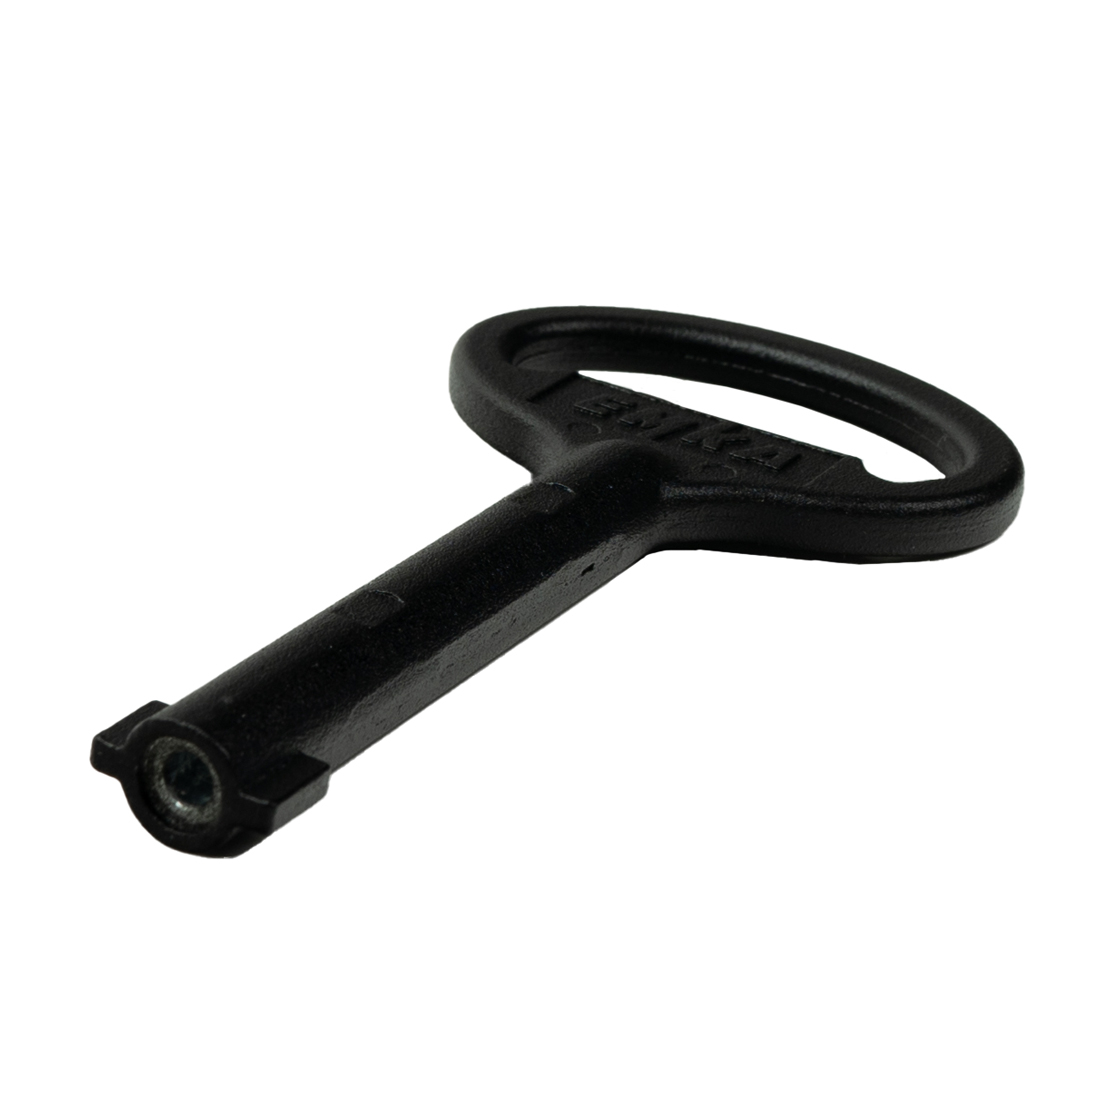 ► EMKA Doppelbart Schlüssel 3mm schwarz für Abfallbehälter - E 903